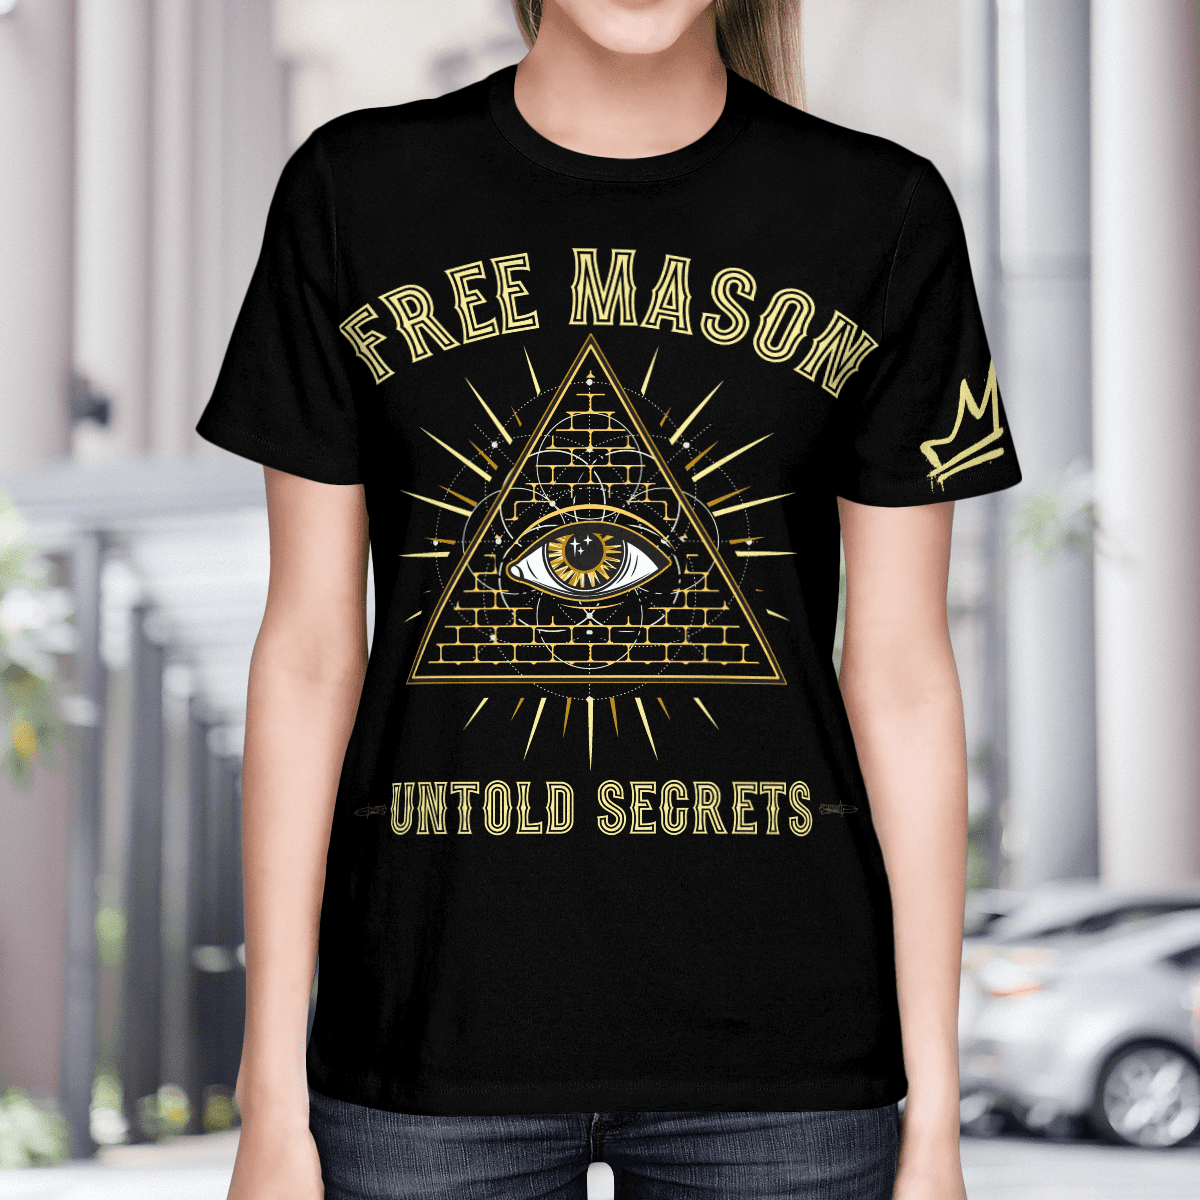 Free Mason Untold Secrets Shirt